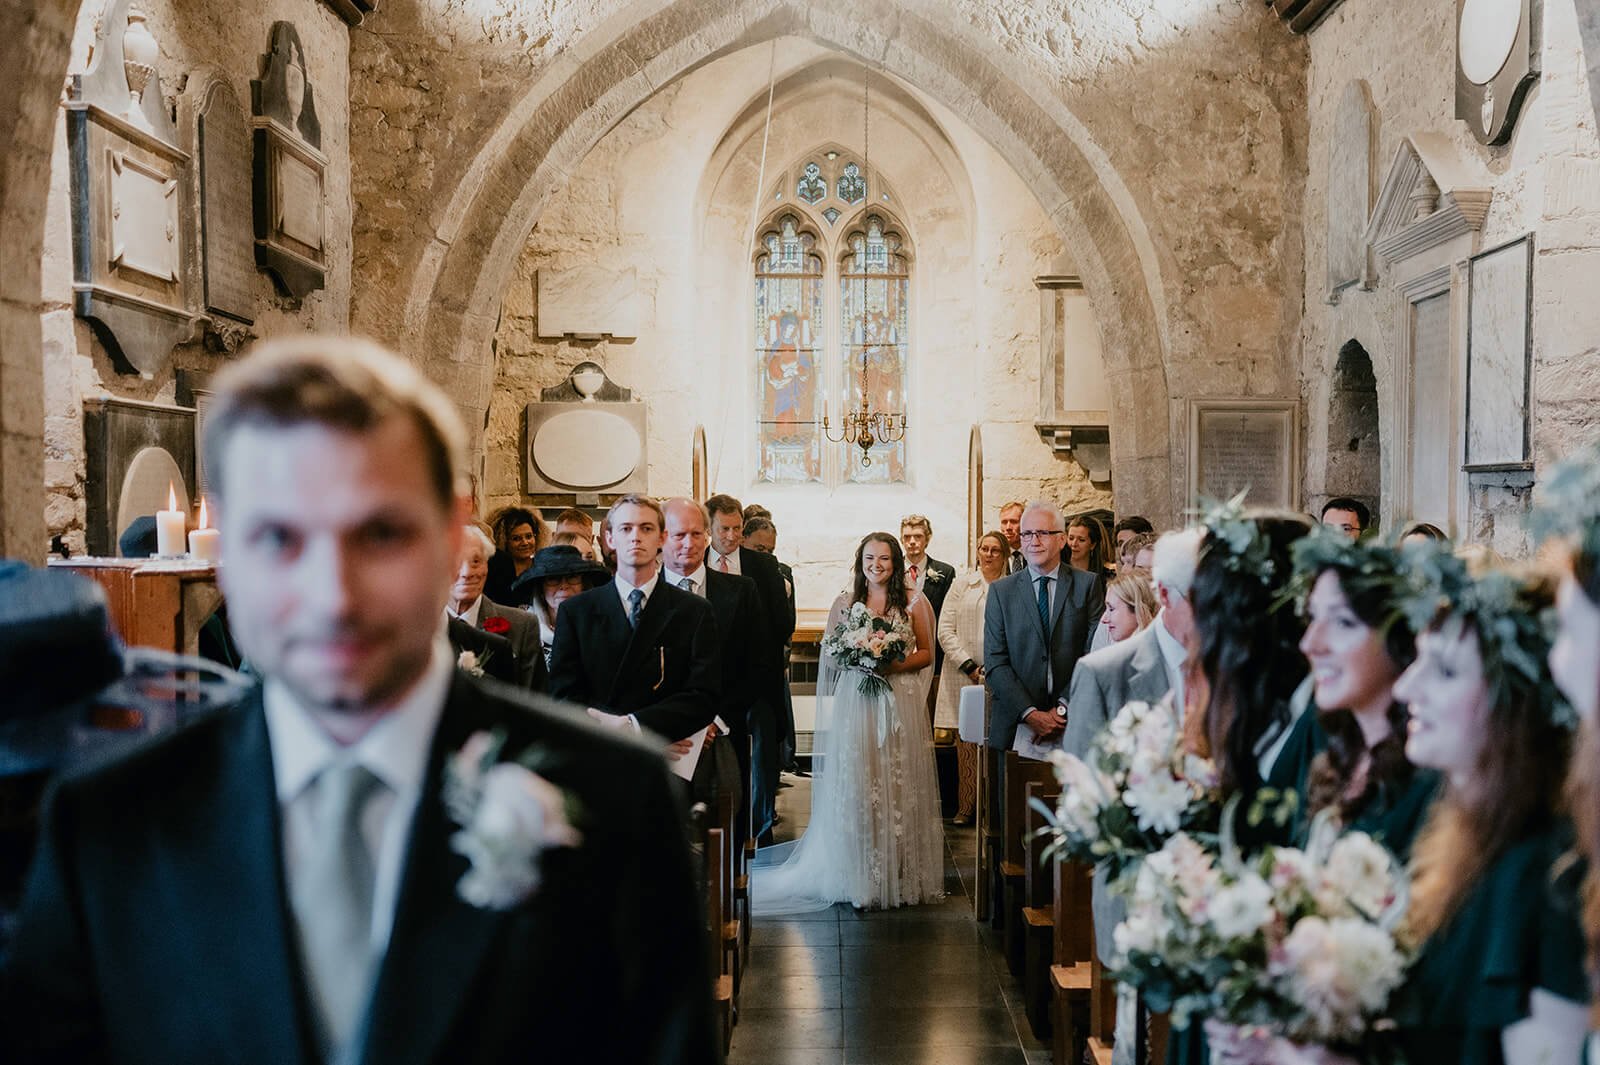 Wedding-church-bride-entrance-2.jpg